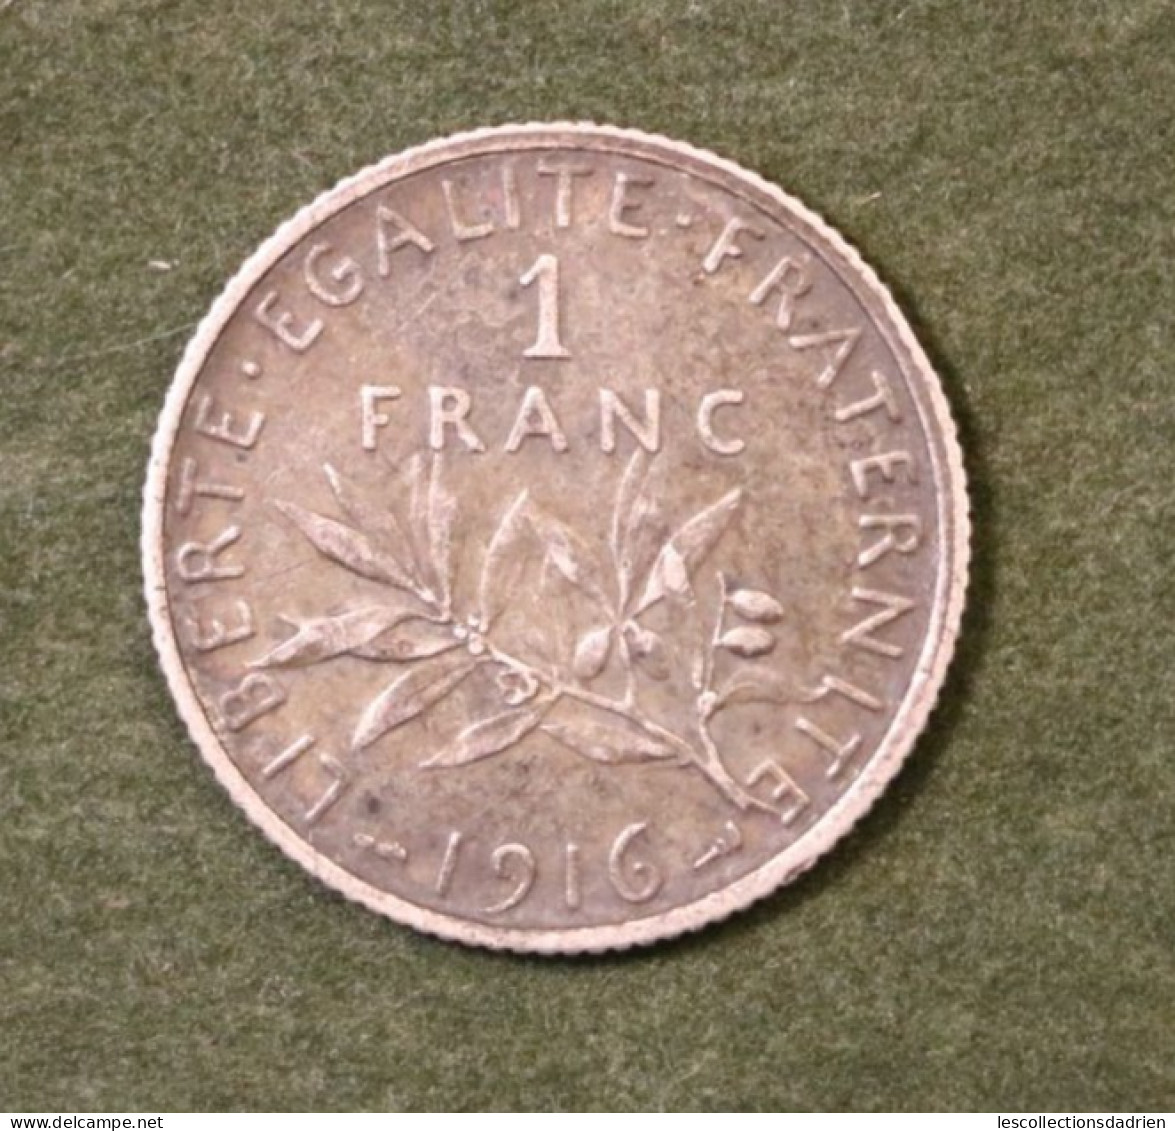 Pièce En Argent Française 1 Franc 1916  - French Silver Coin - 1 Franc